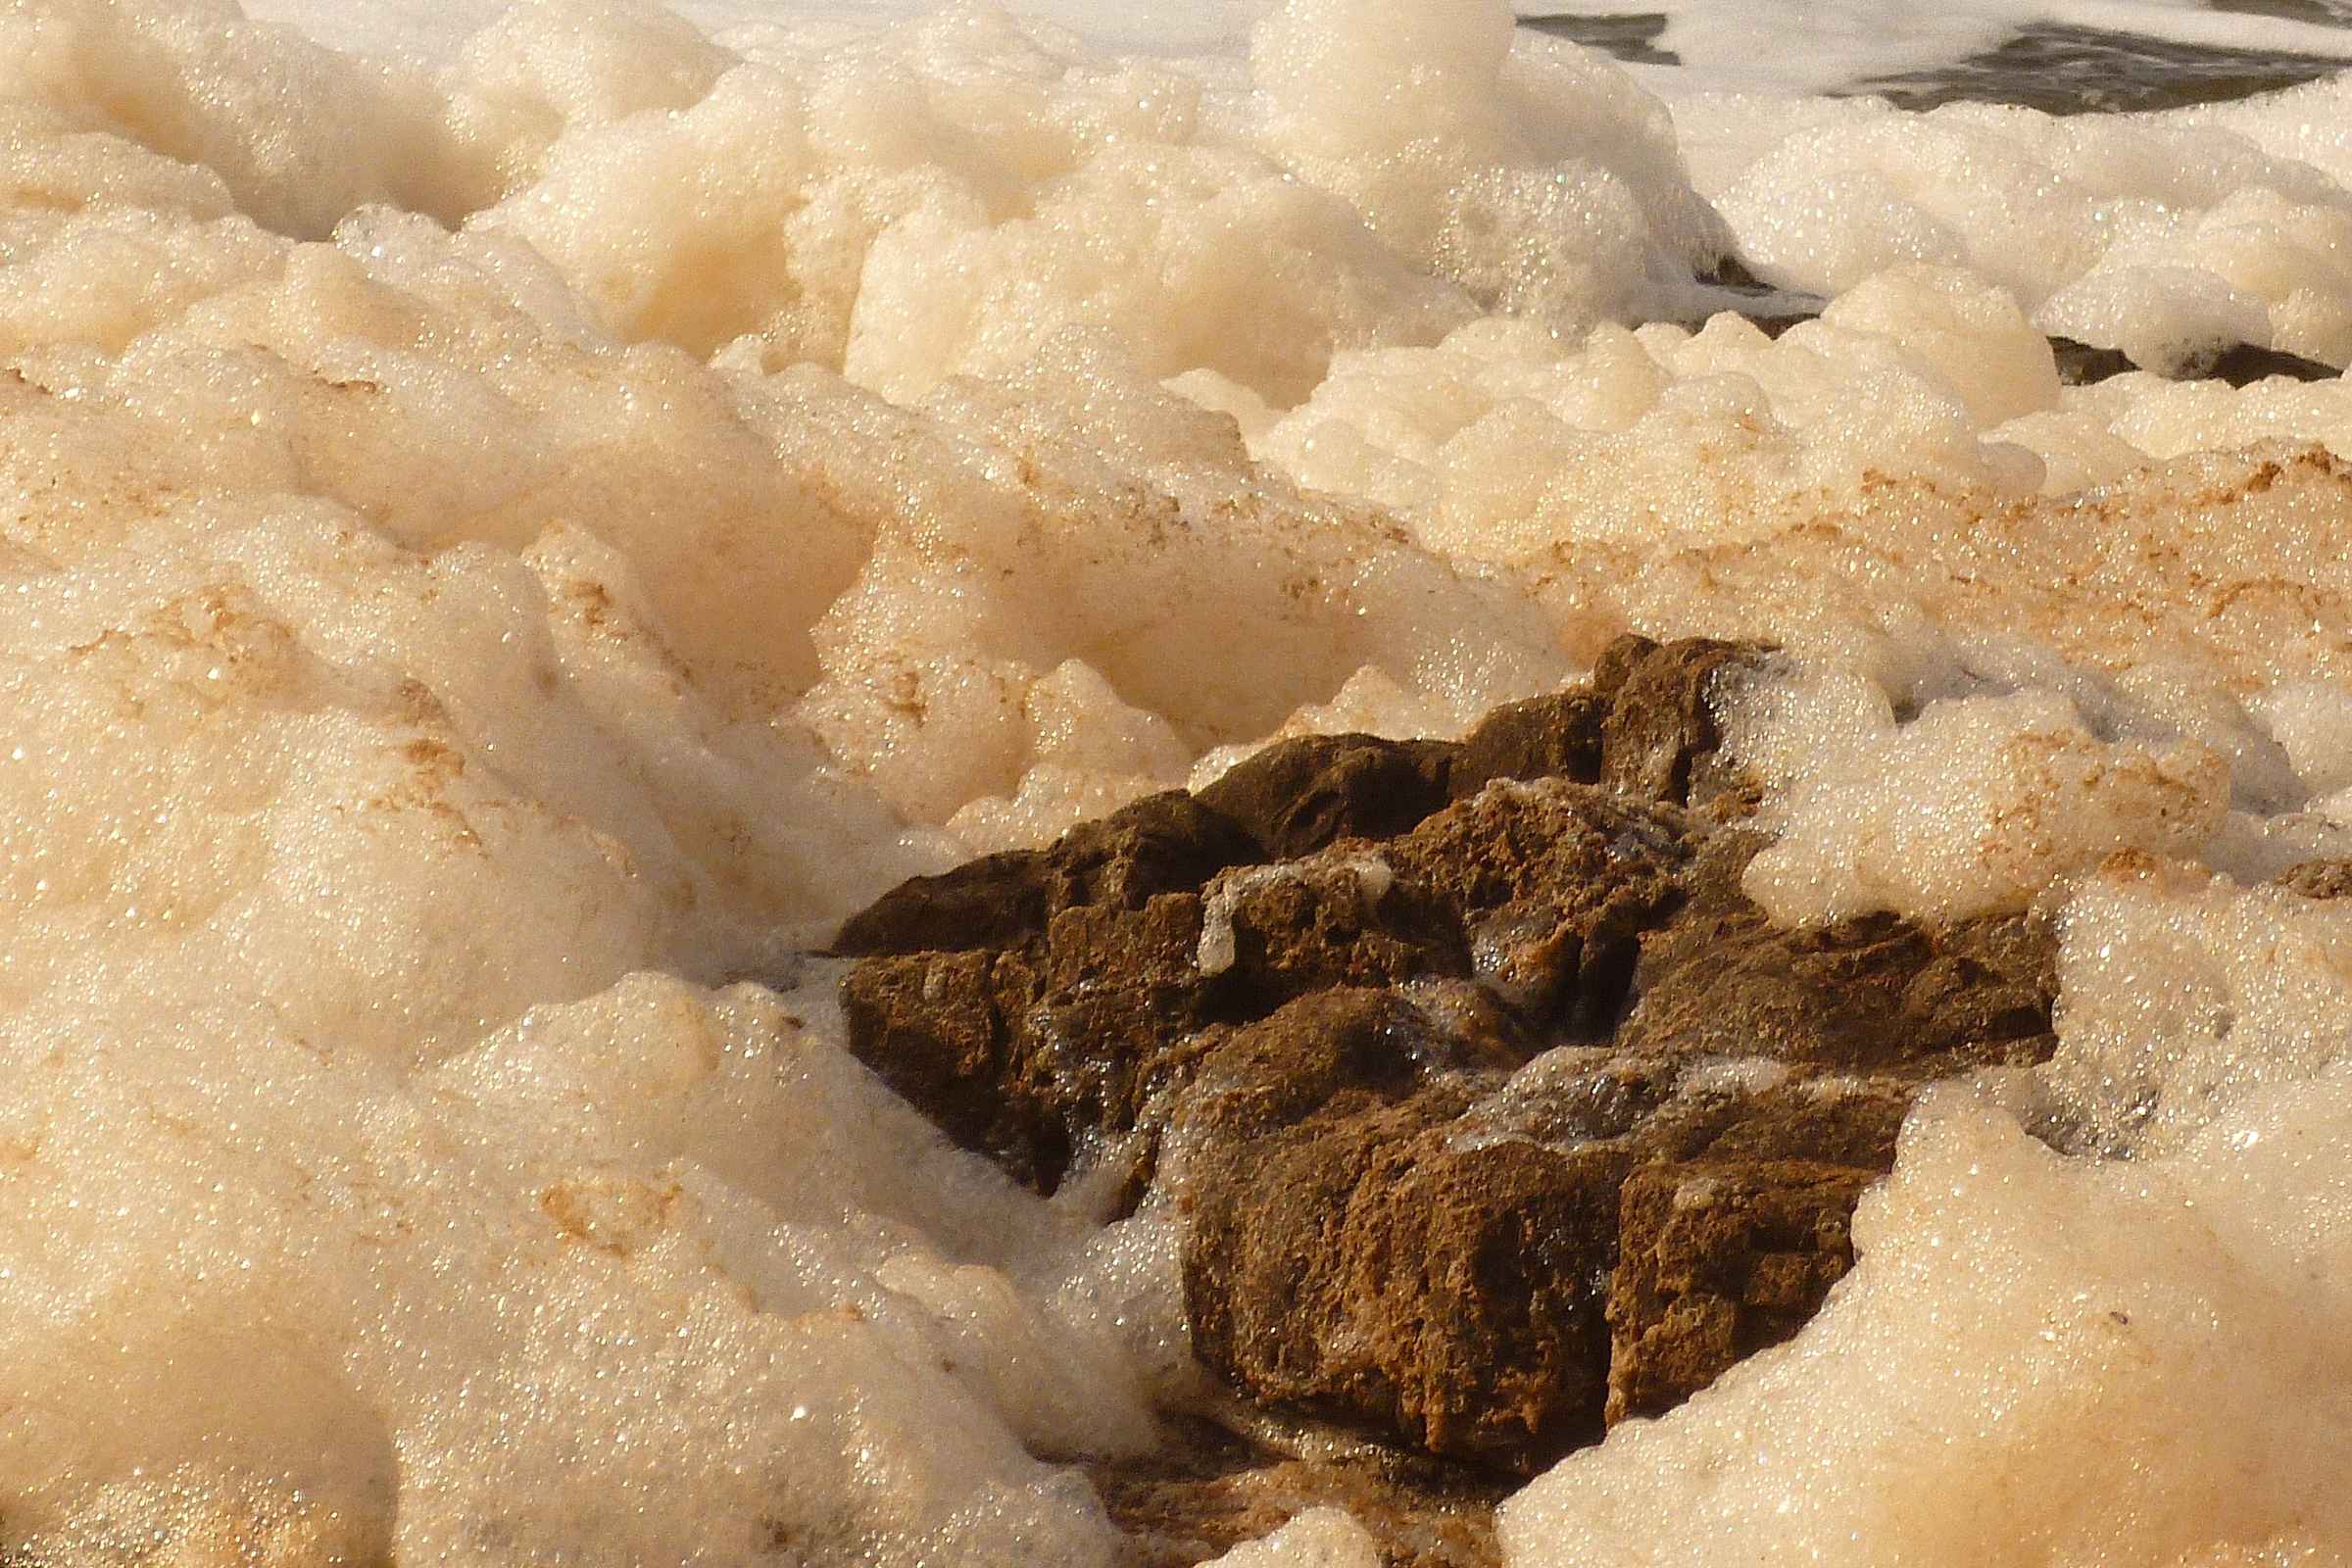 Brown sea foam at the shore. Photo: German11.